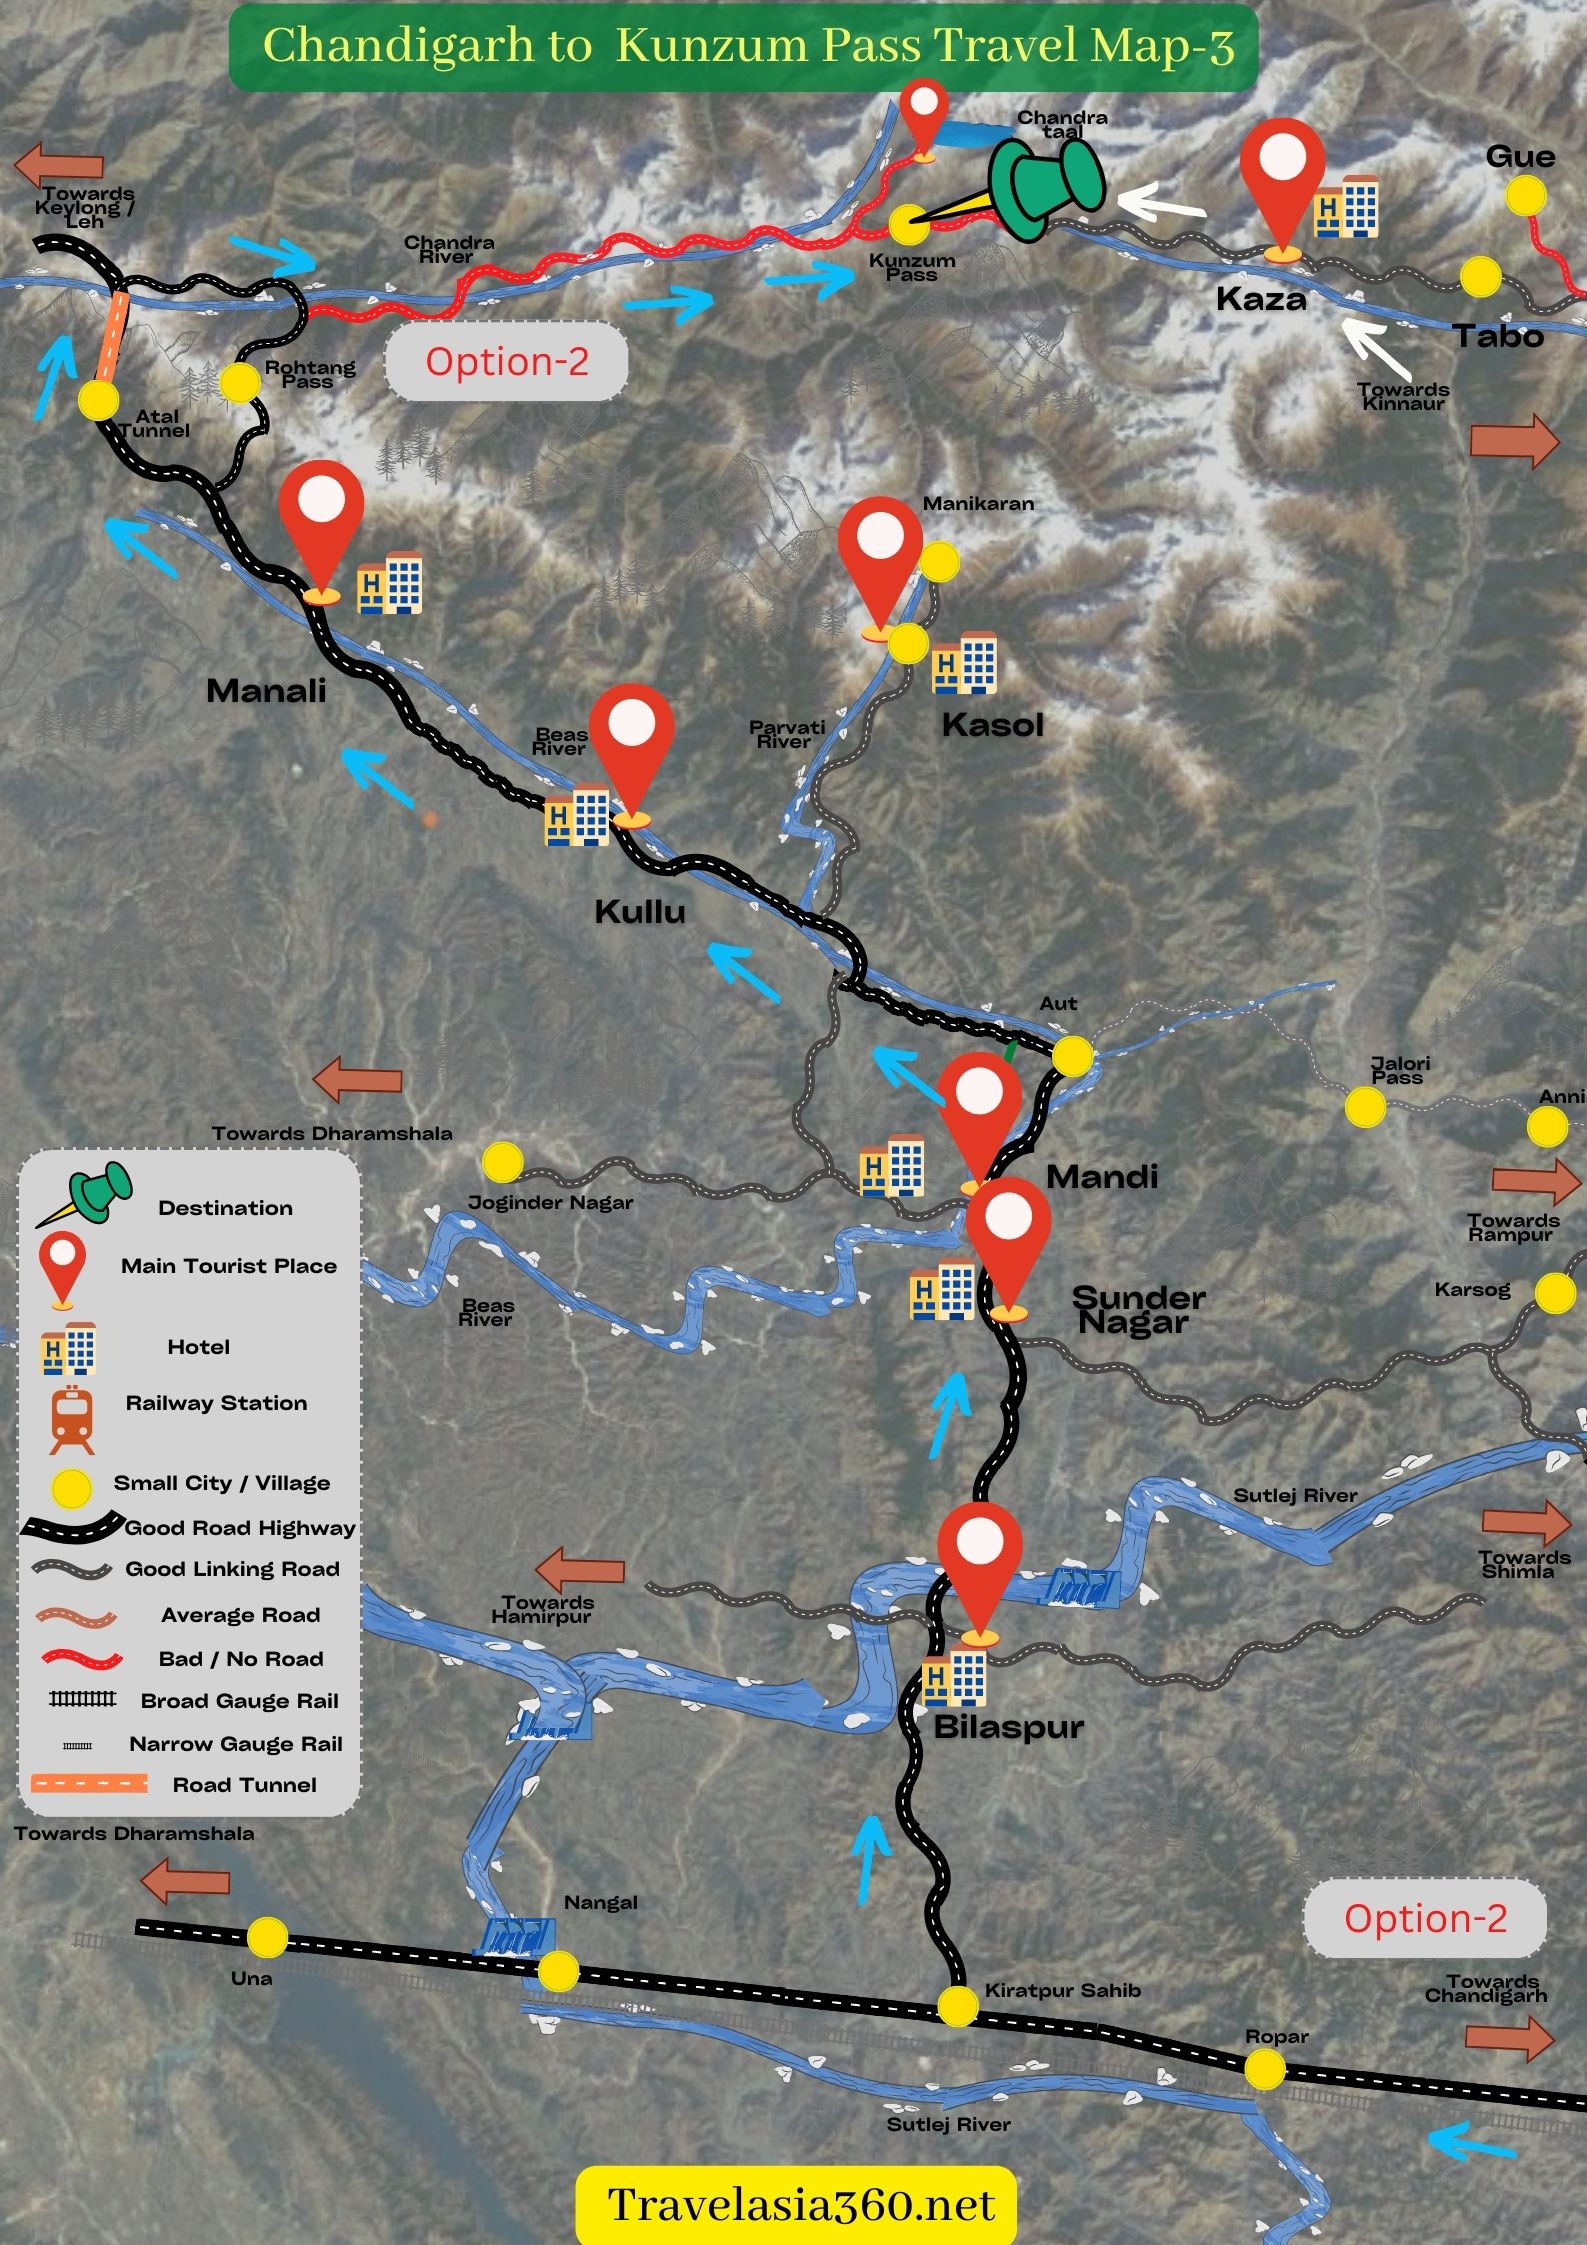 how to reach Kunzum Pass from Chandigarh